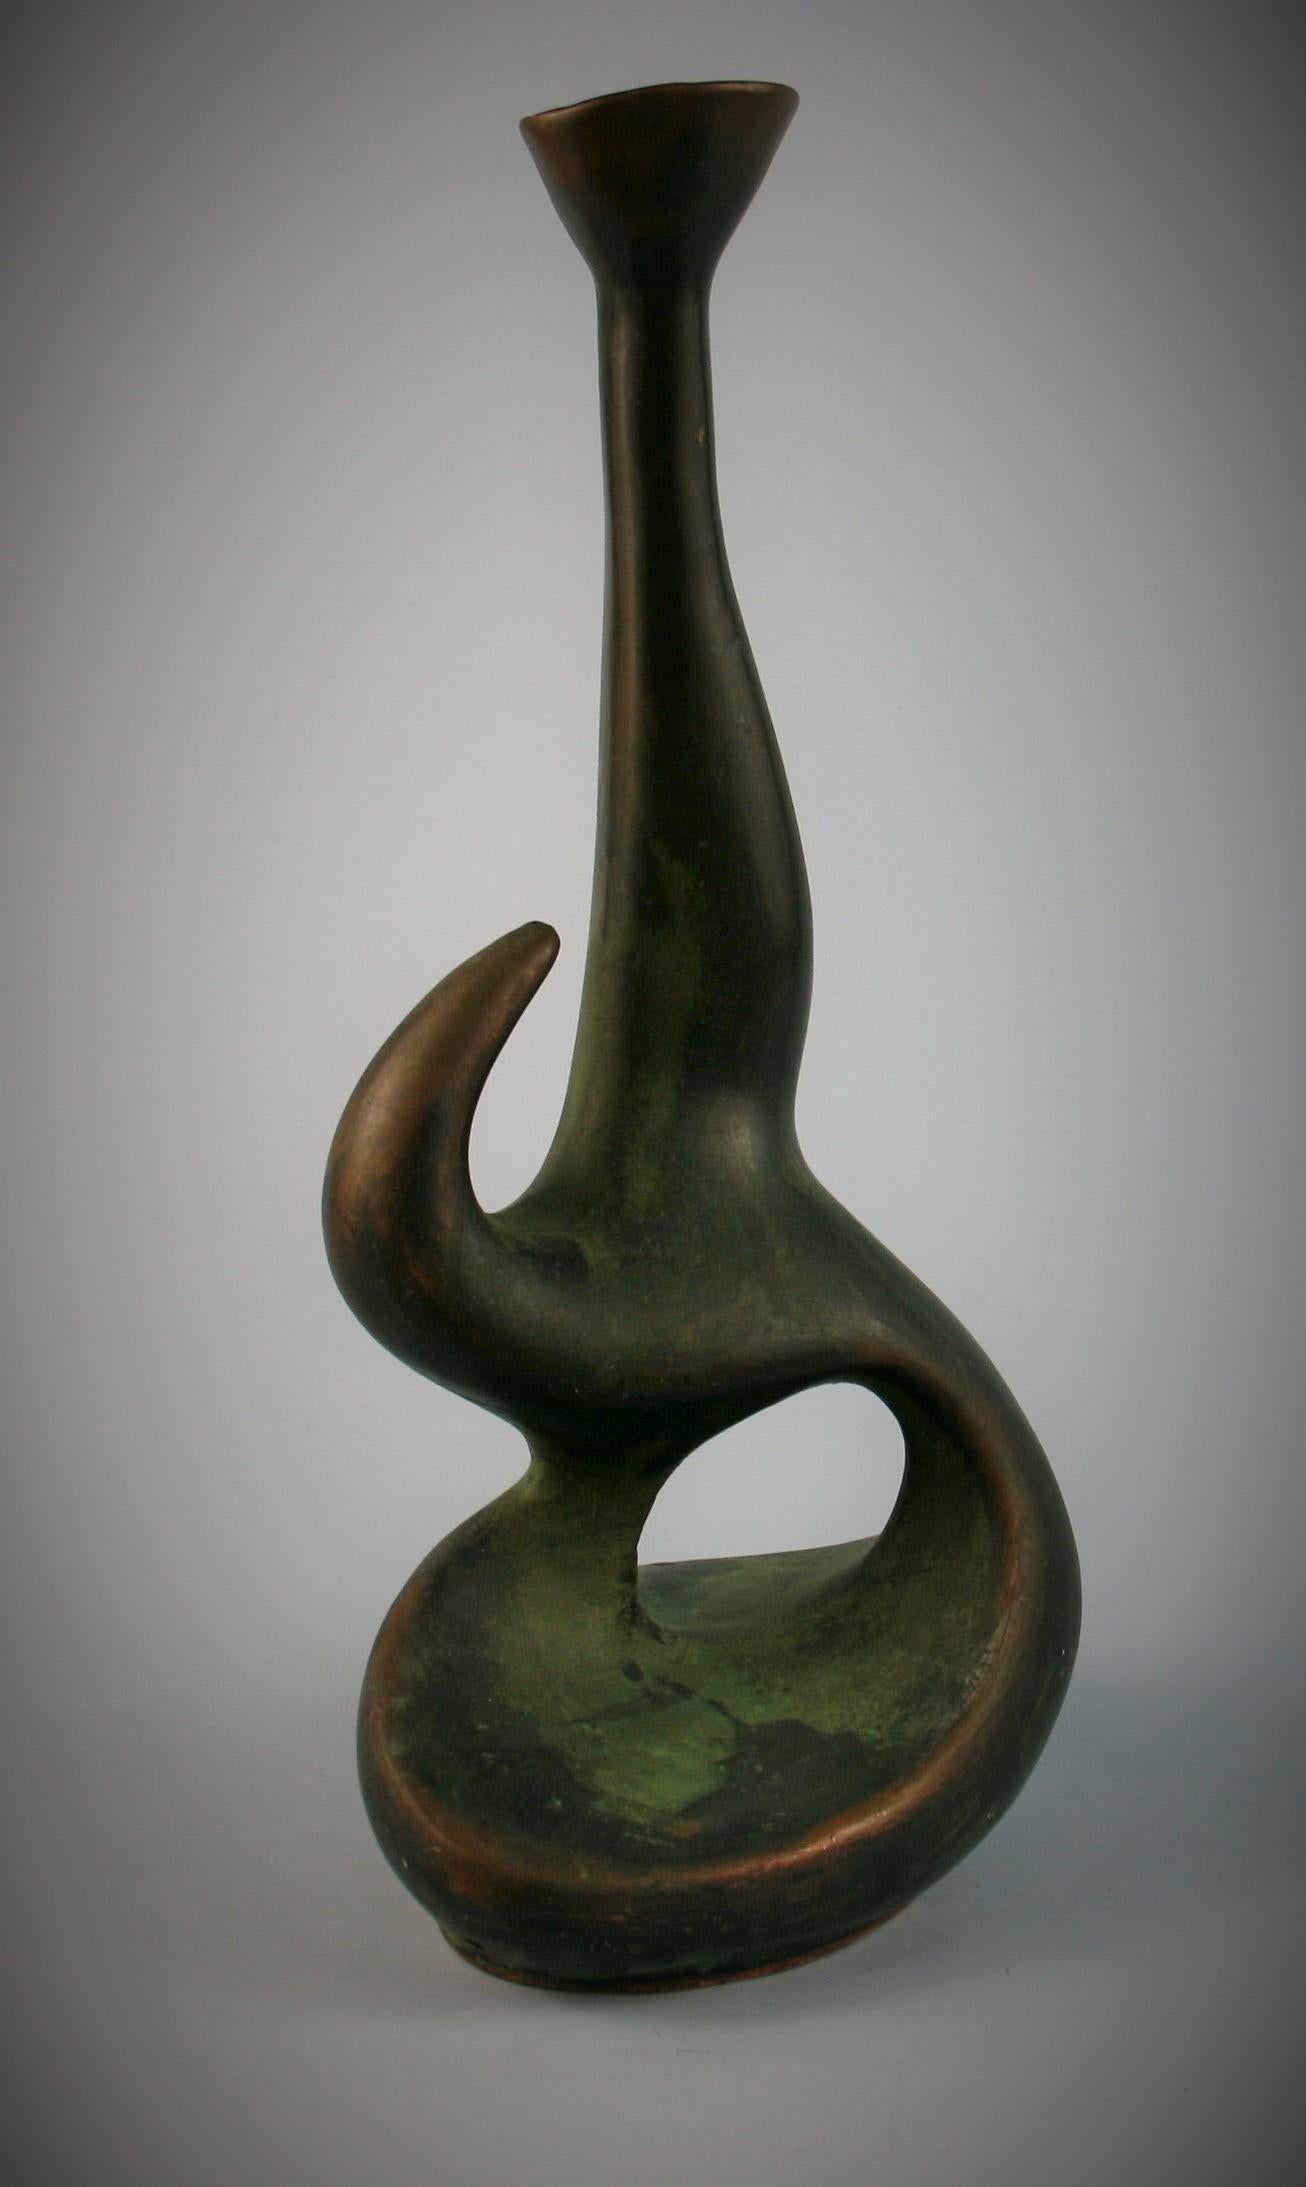 3-613 Japanese copper clad ceramic bud vase/sculpture
Ceramic vase clad in molted copper.